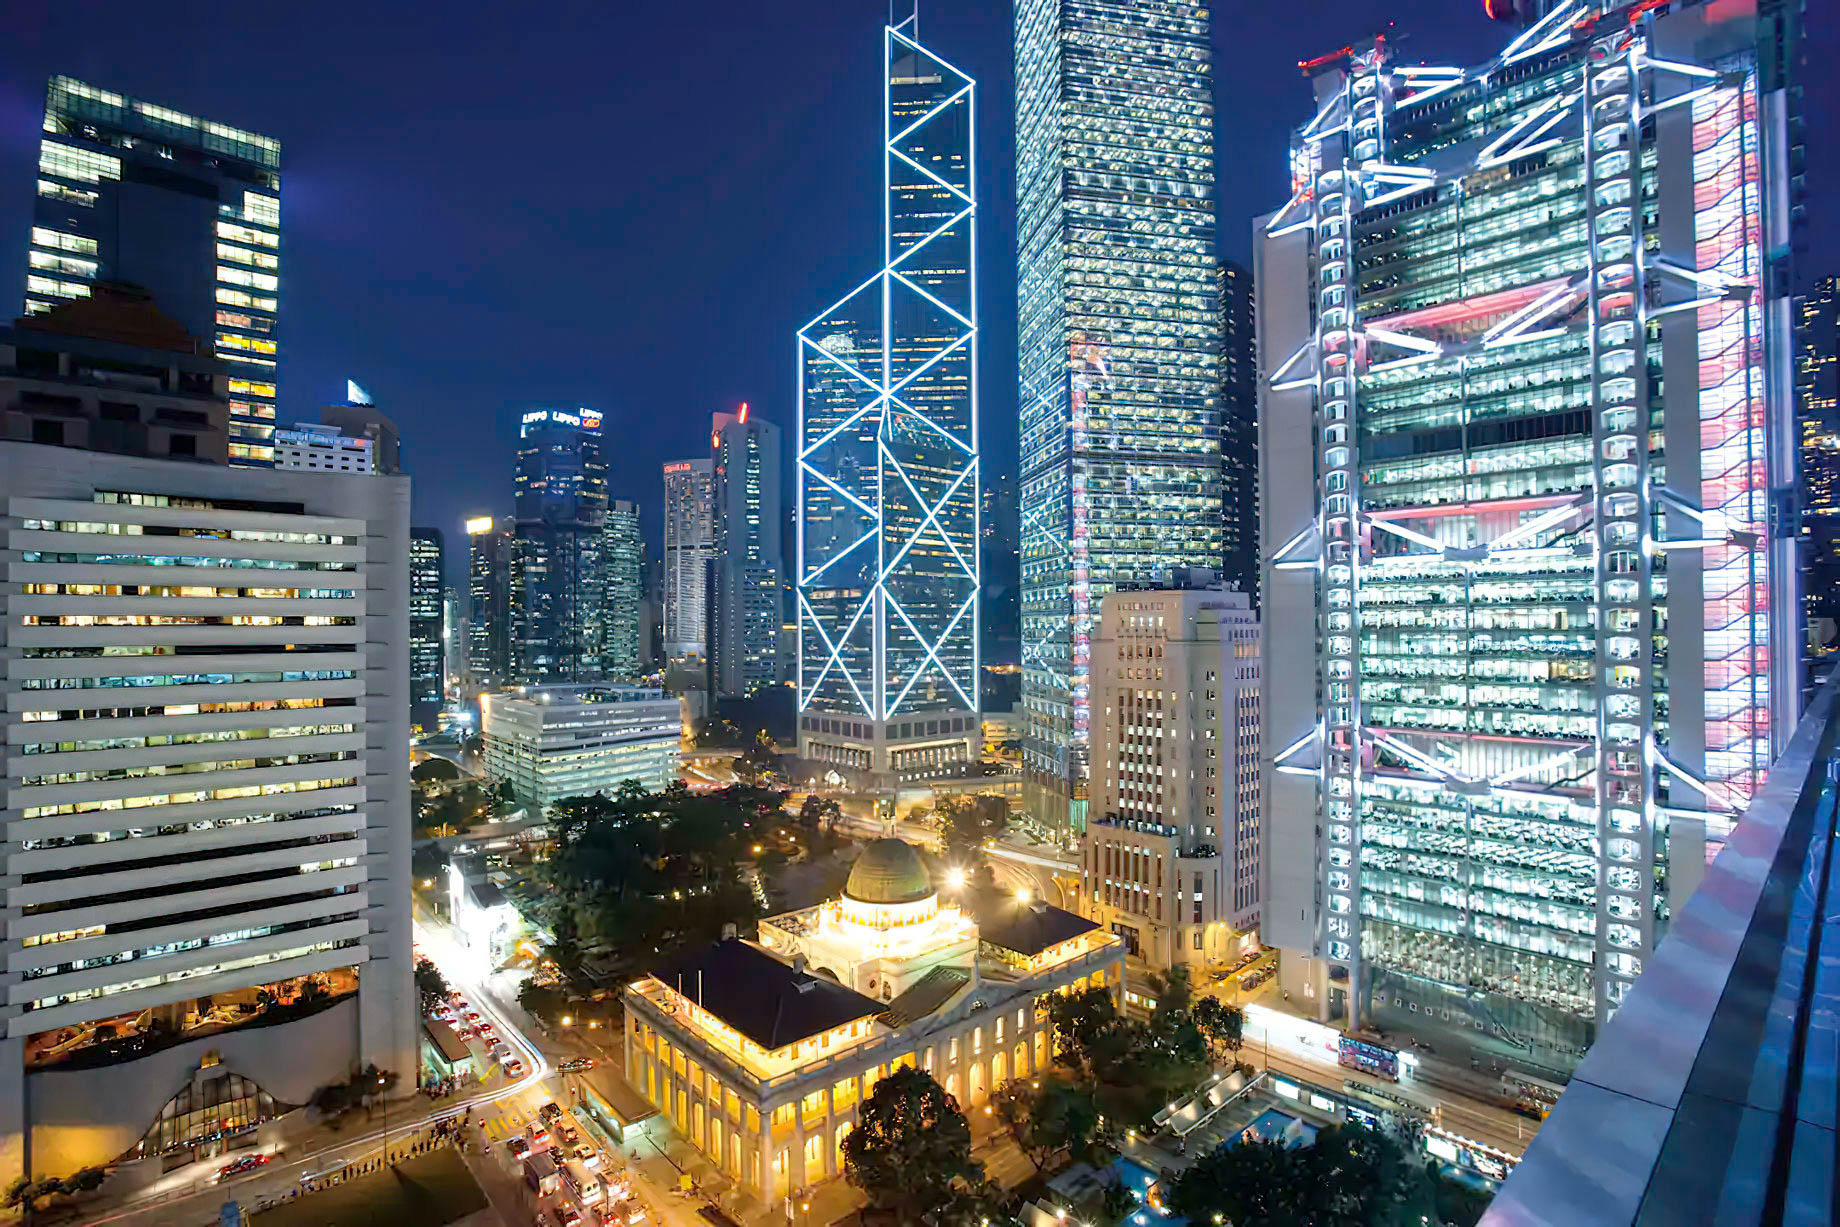 Mandarin Oriental, Hong Kong Hotel – Hong Kong, China – City View Night